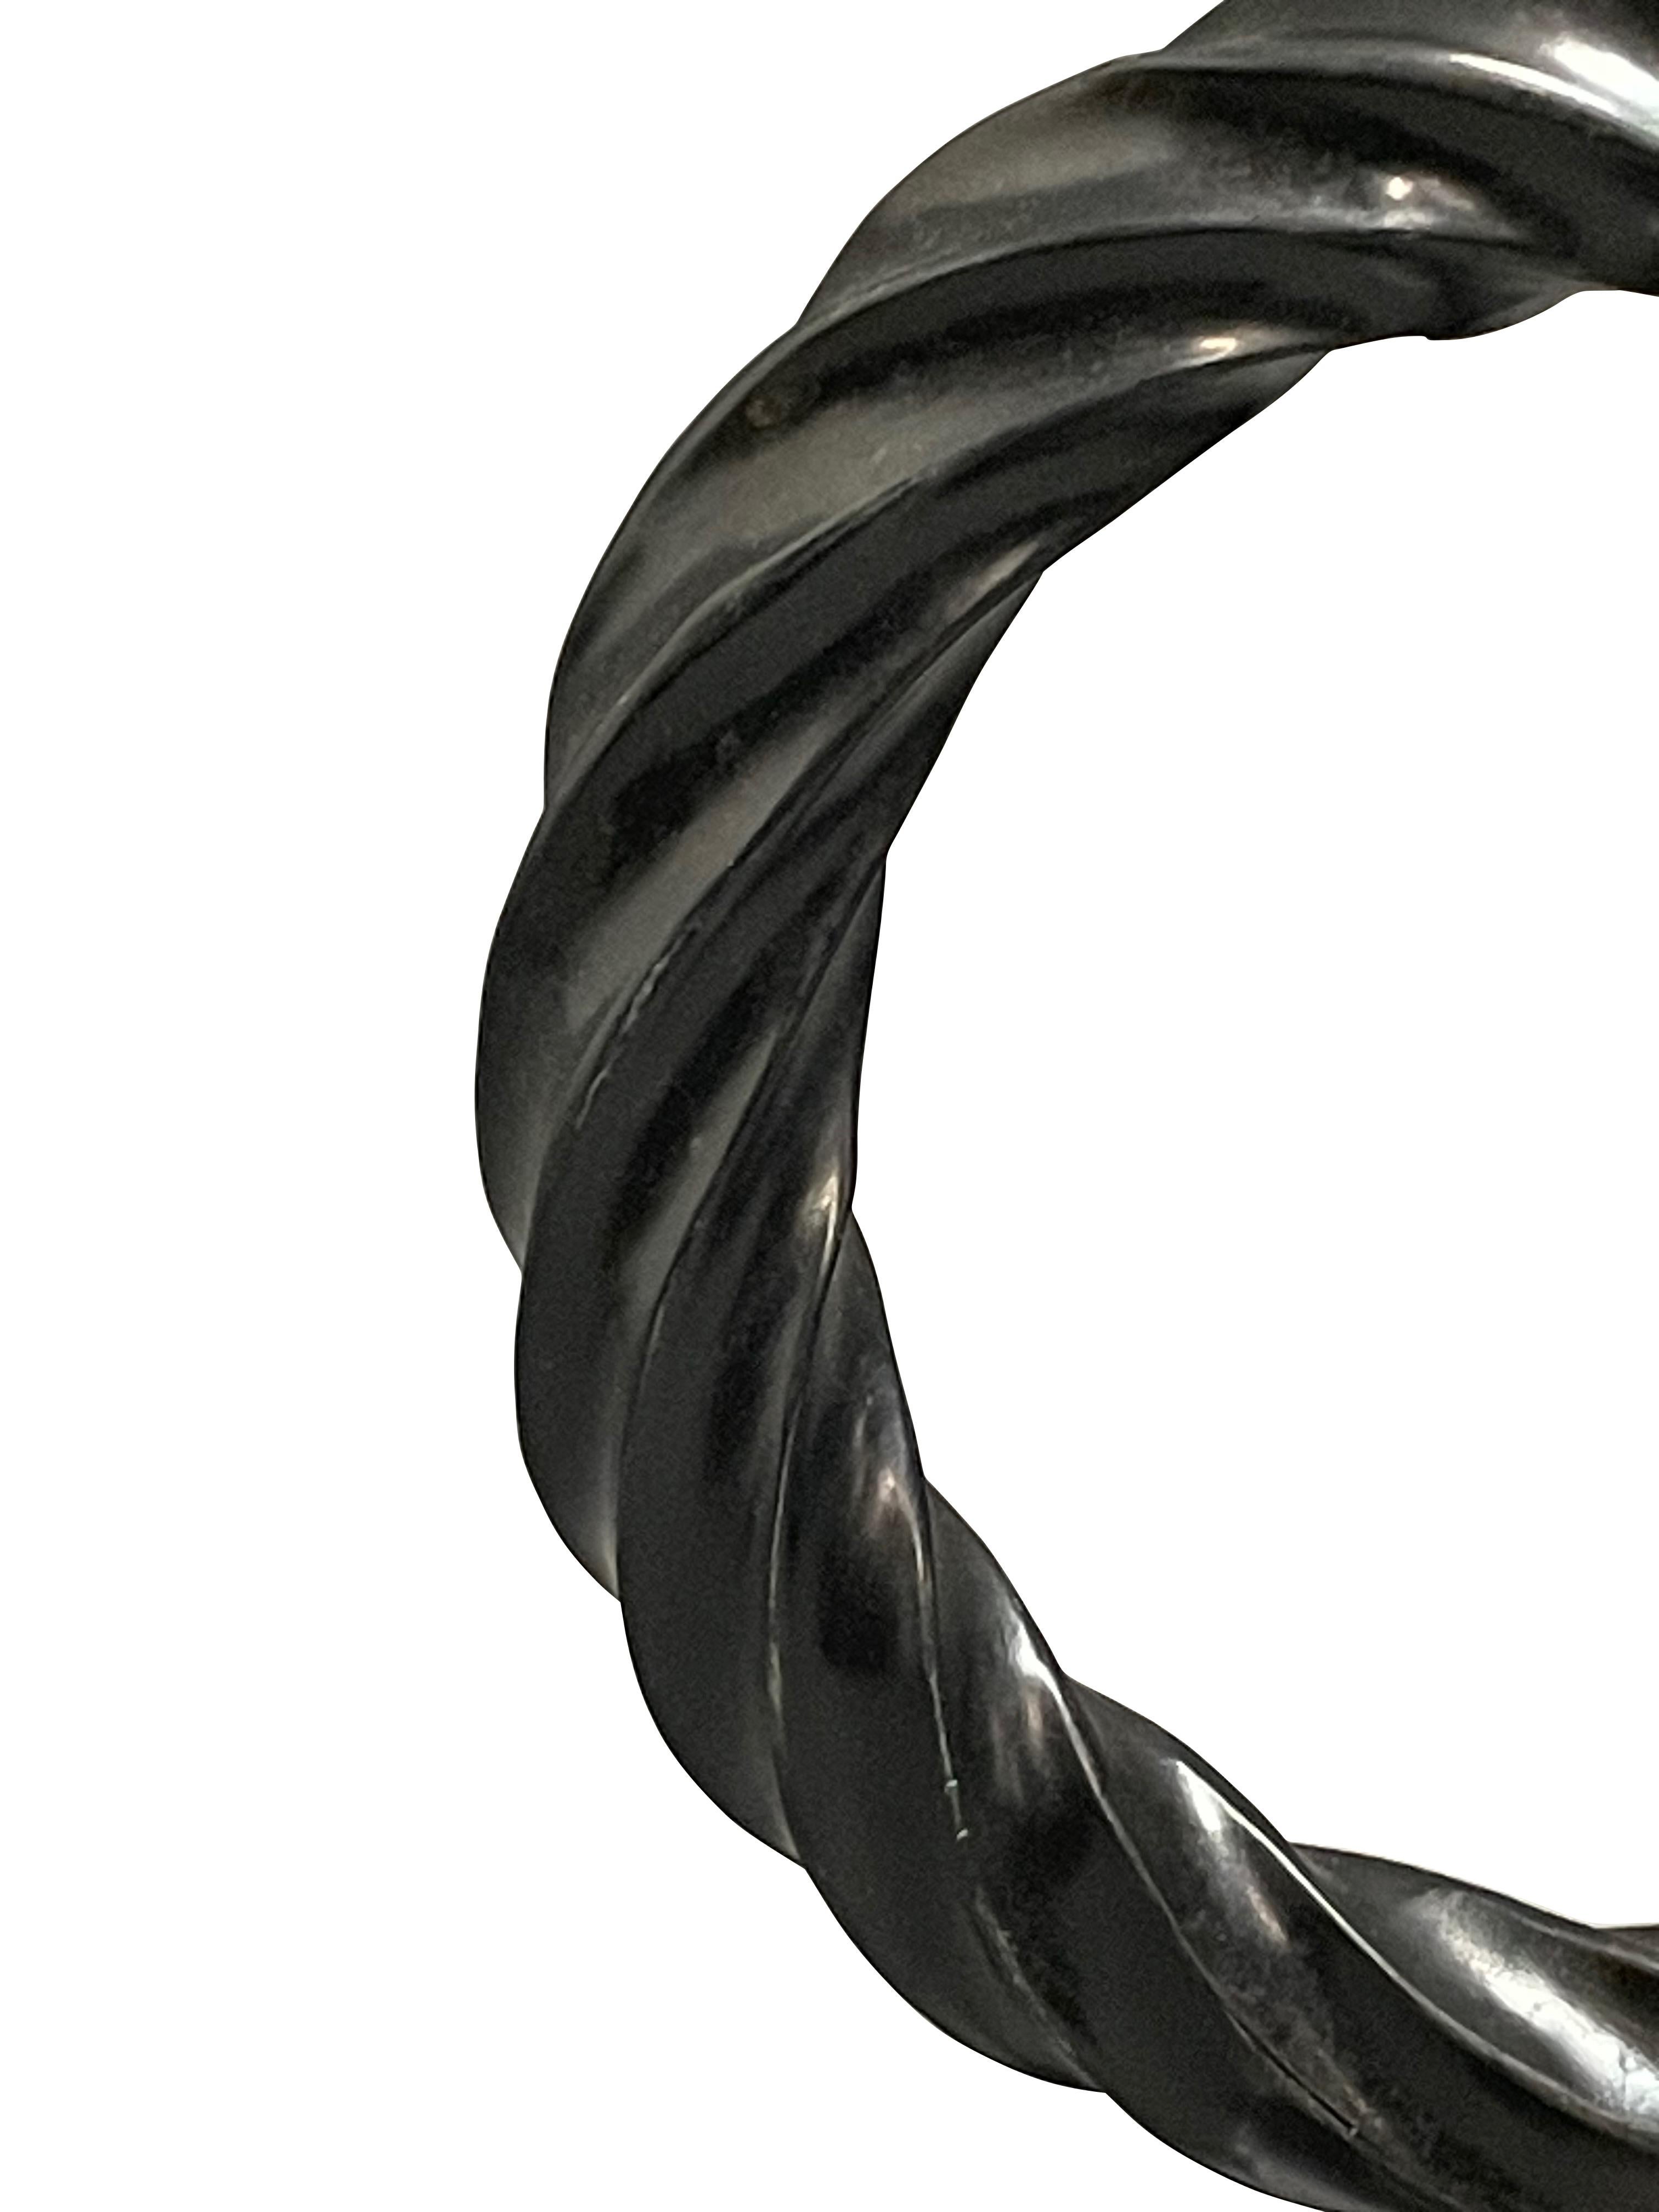 Ensemble chinois contemporain de deux anneaux de pierre en corde noire sur des supports en métal.
Finition polie
Les supports mesurent 6